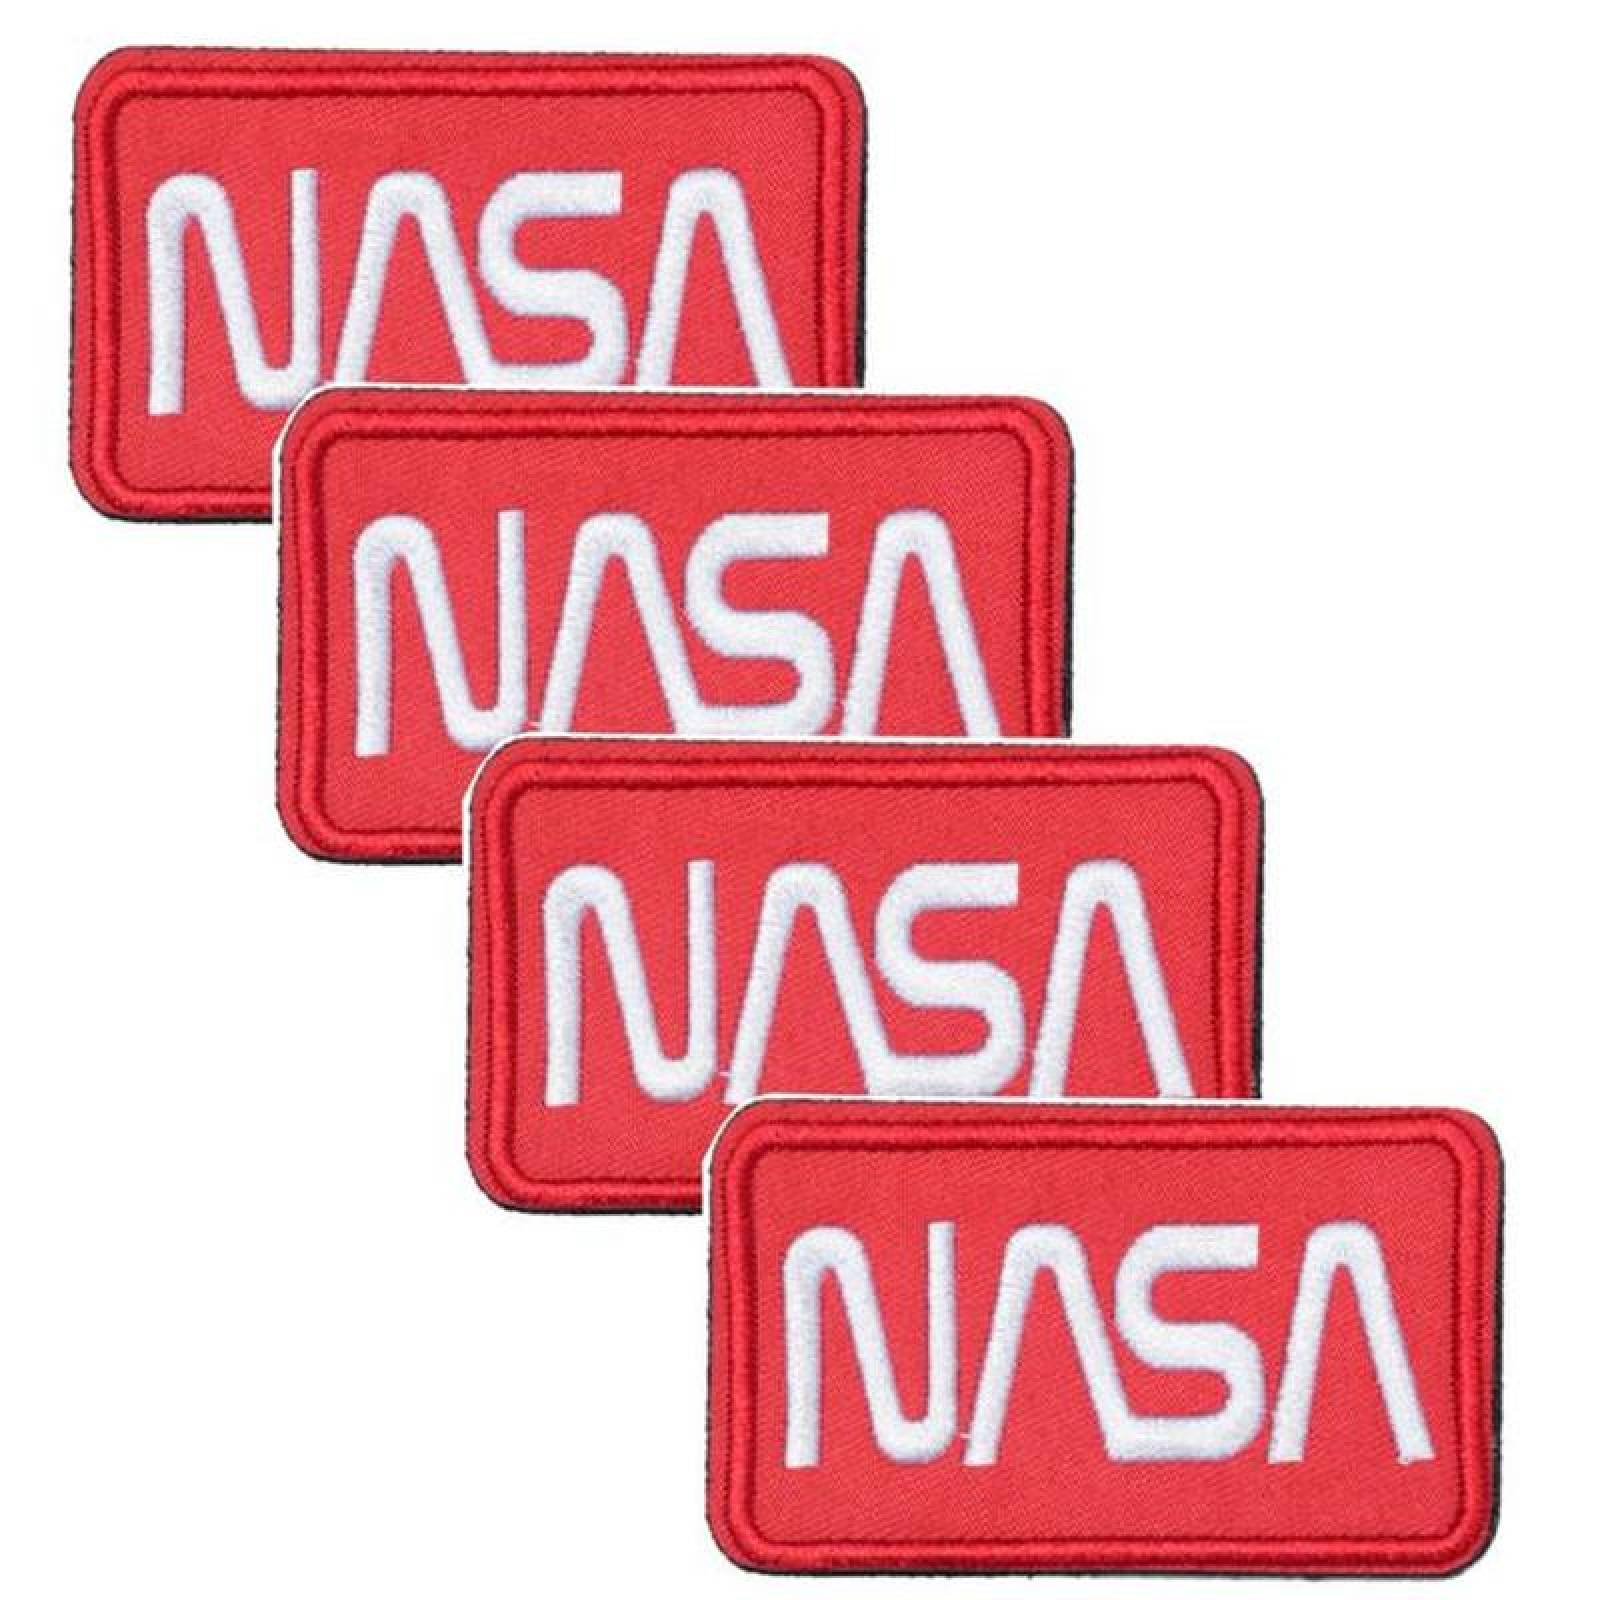 NASA Parches Eficaces MXNAA-004-1 4 Parches Nasa 9,1x4,1cm Rojo Blanco  Bordado con Velcro, Nasa04